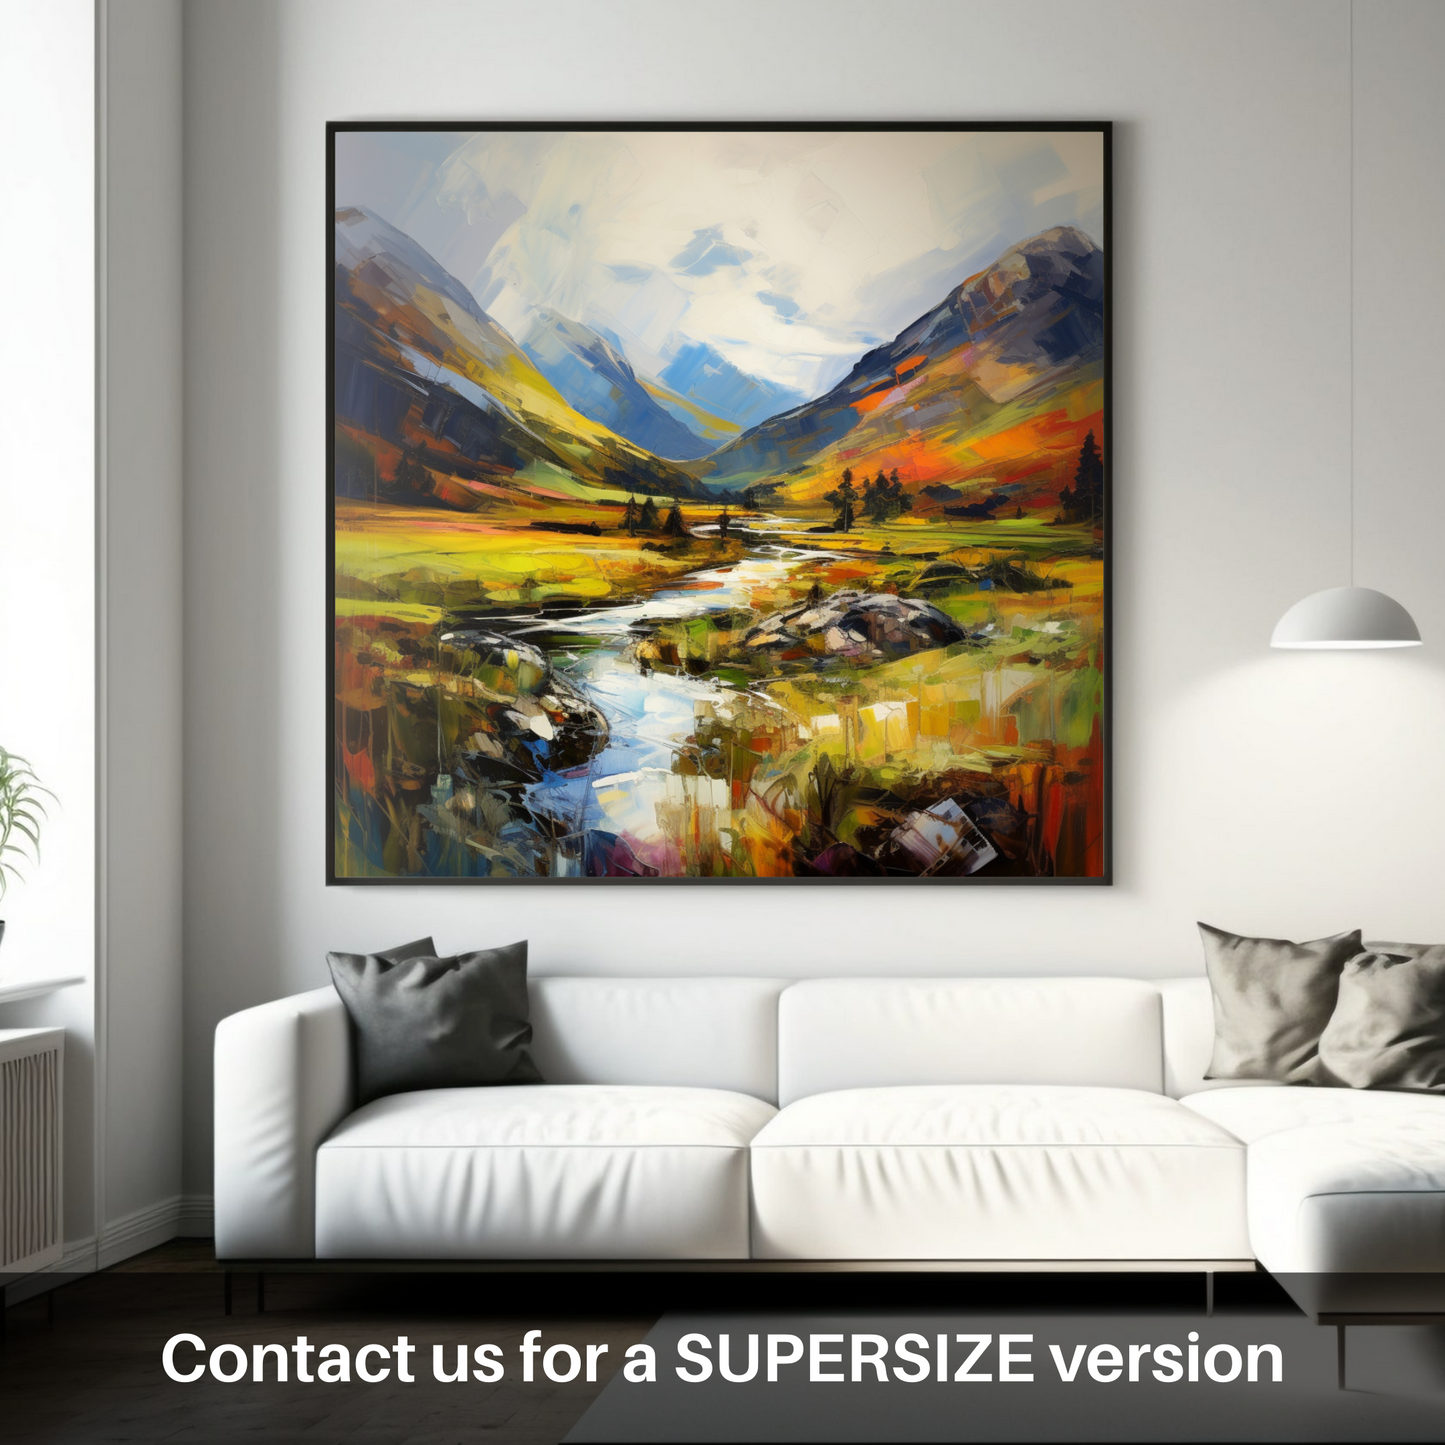 Huge supersize print of Glen Strathfarrar, Highlands